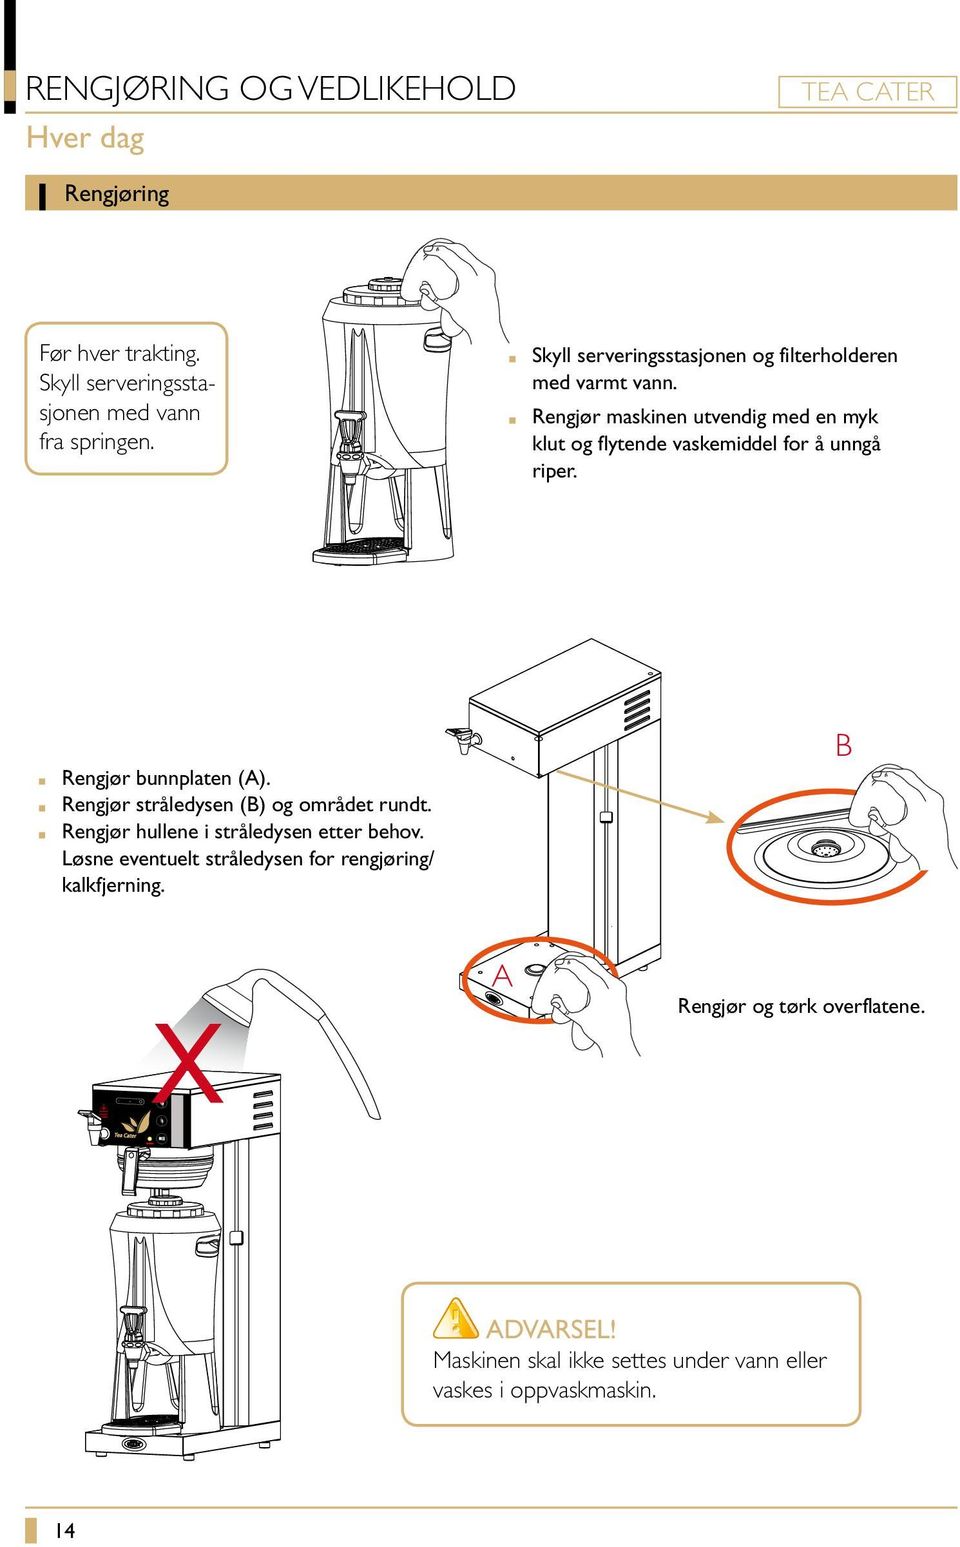 Rengjør maskinen utvendig med en myk klut og flytende vaskemiddel for å unngå riper. Rengjør bunnplaten (A).